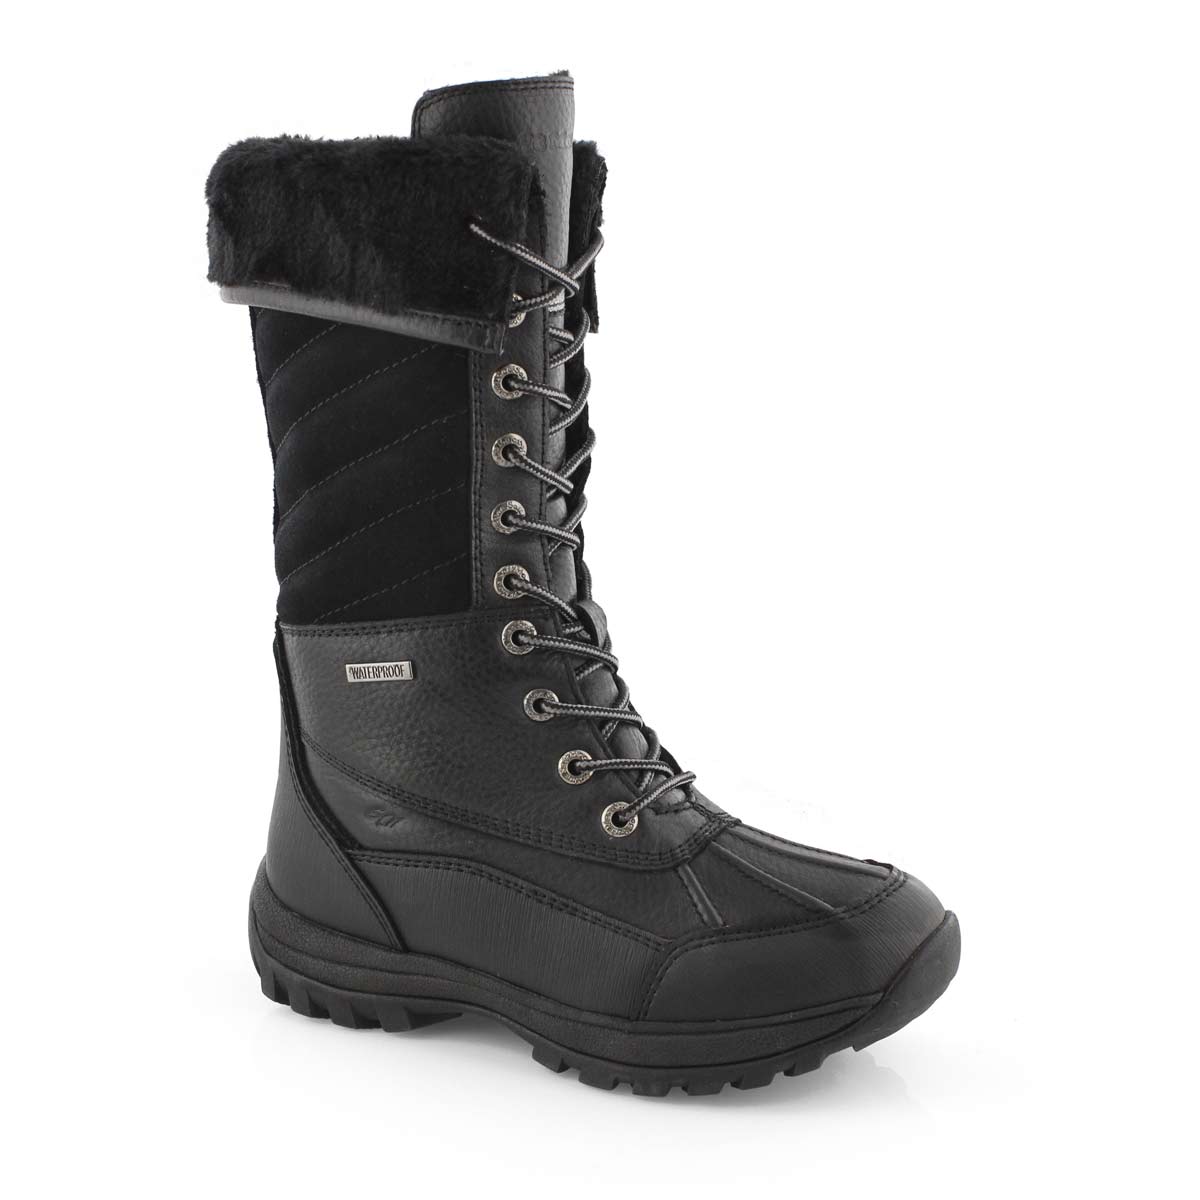 women's tall waterproof winter boots